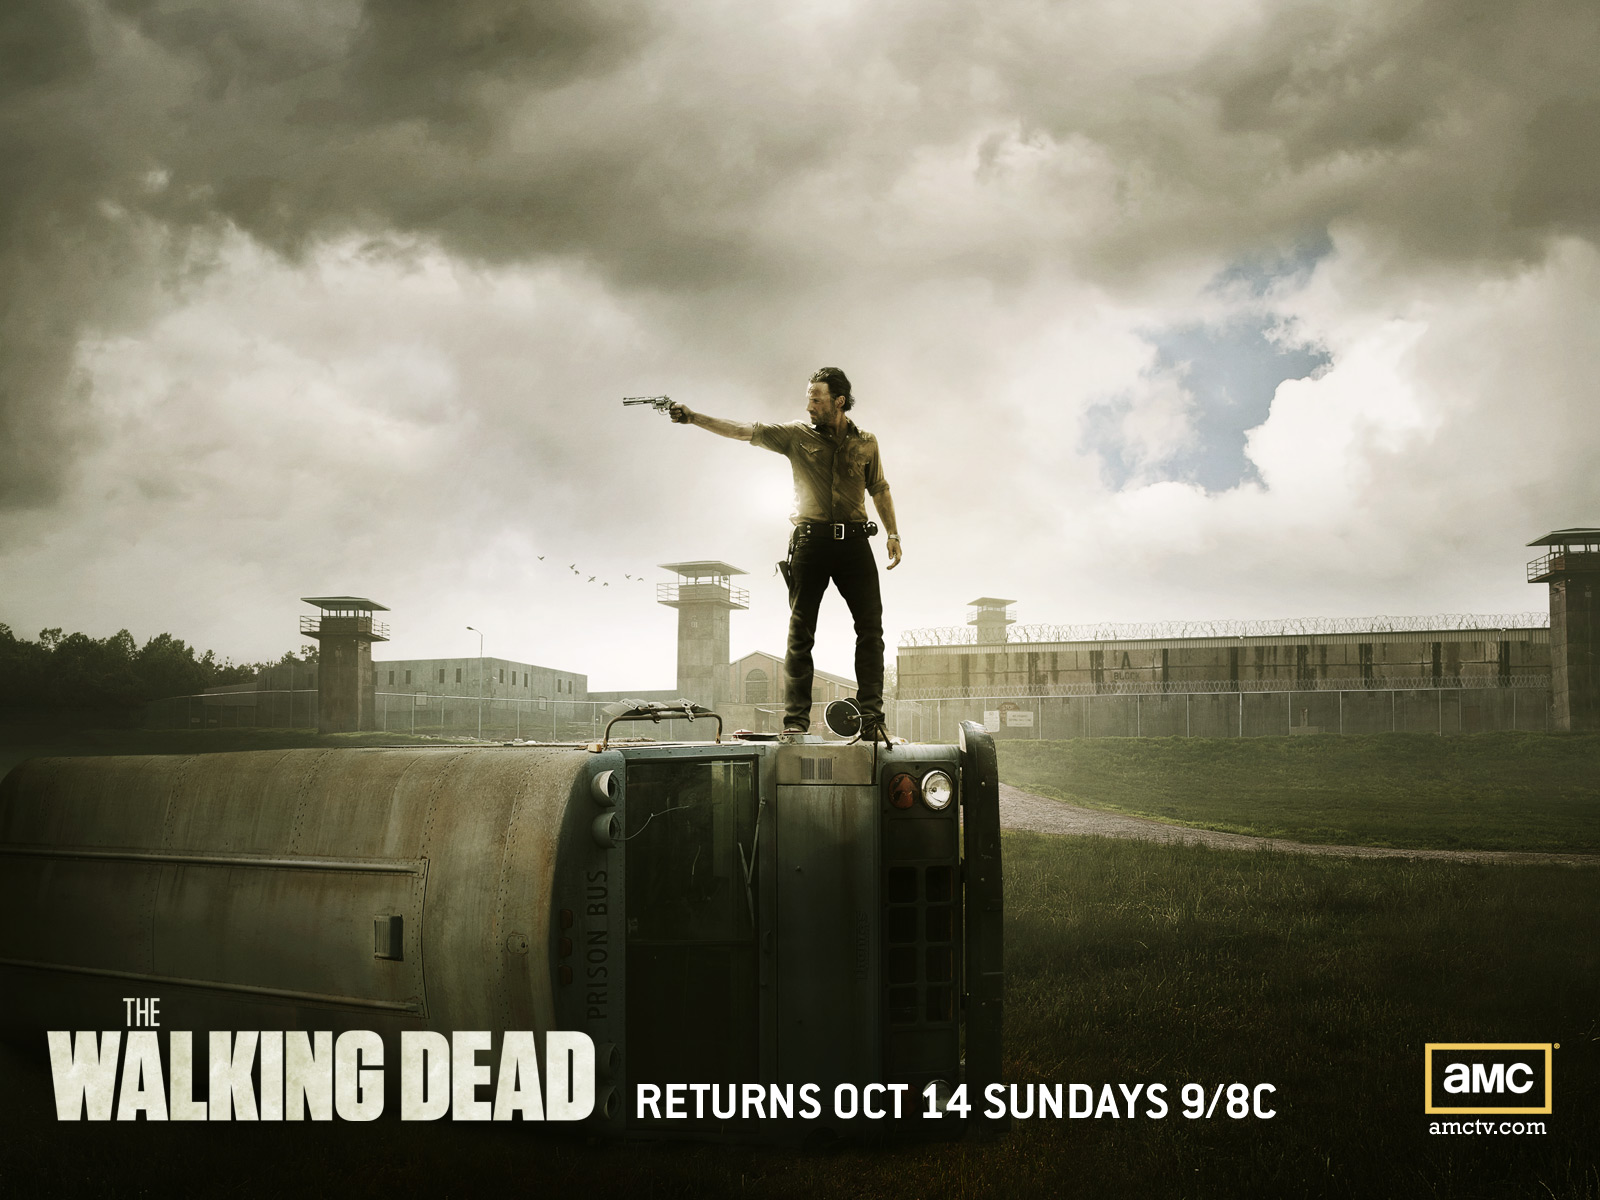 The Walking Dead the walking dead 32297721 1600 1200jpg